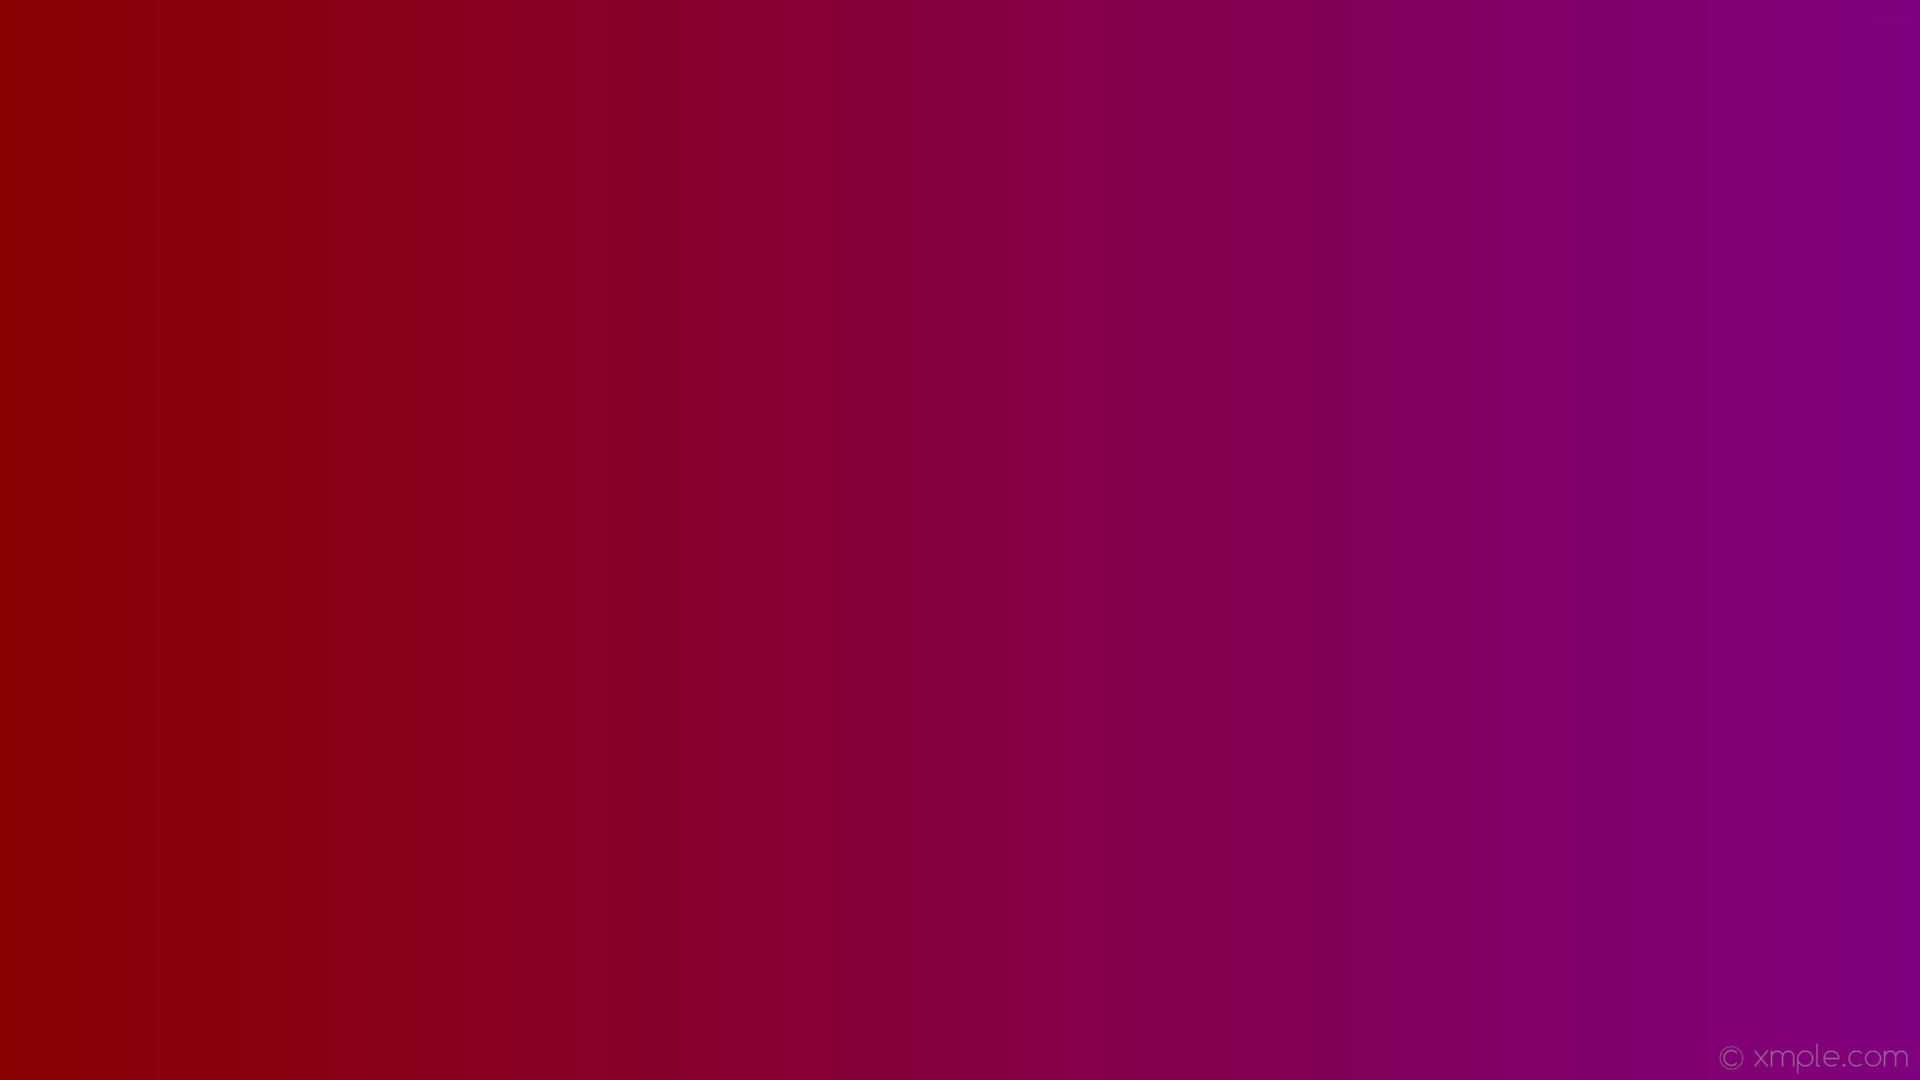 1920x1080 wallpaper purple red gradient linear dark red #800080 #8b0000 0Â°